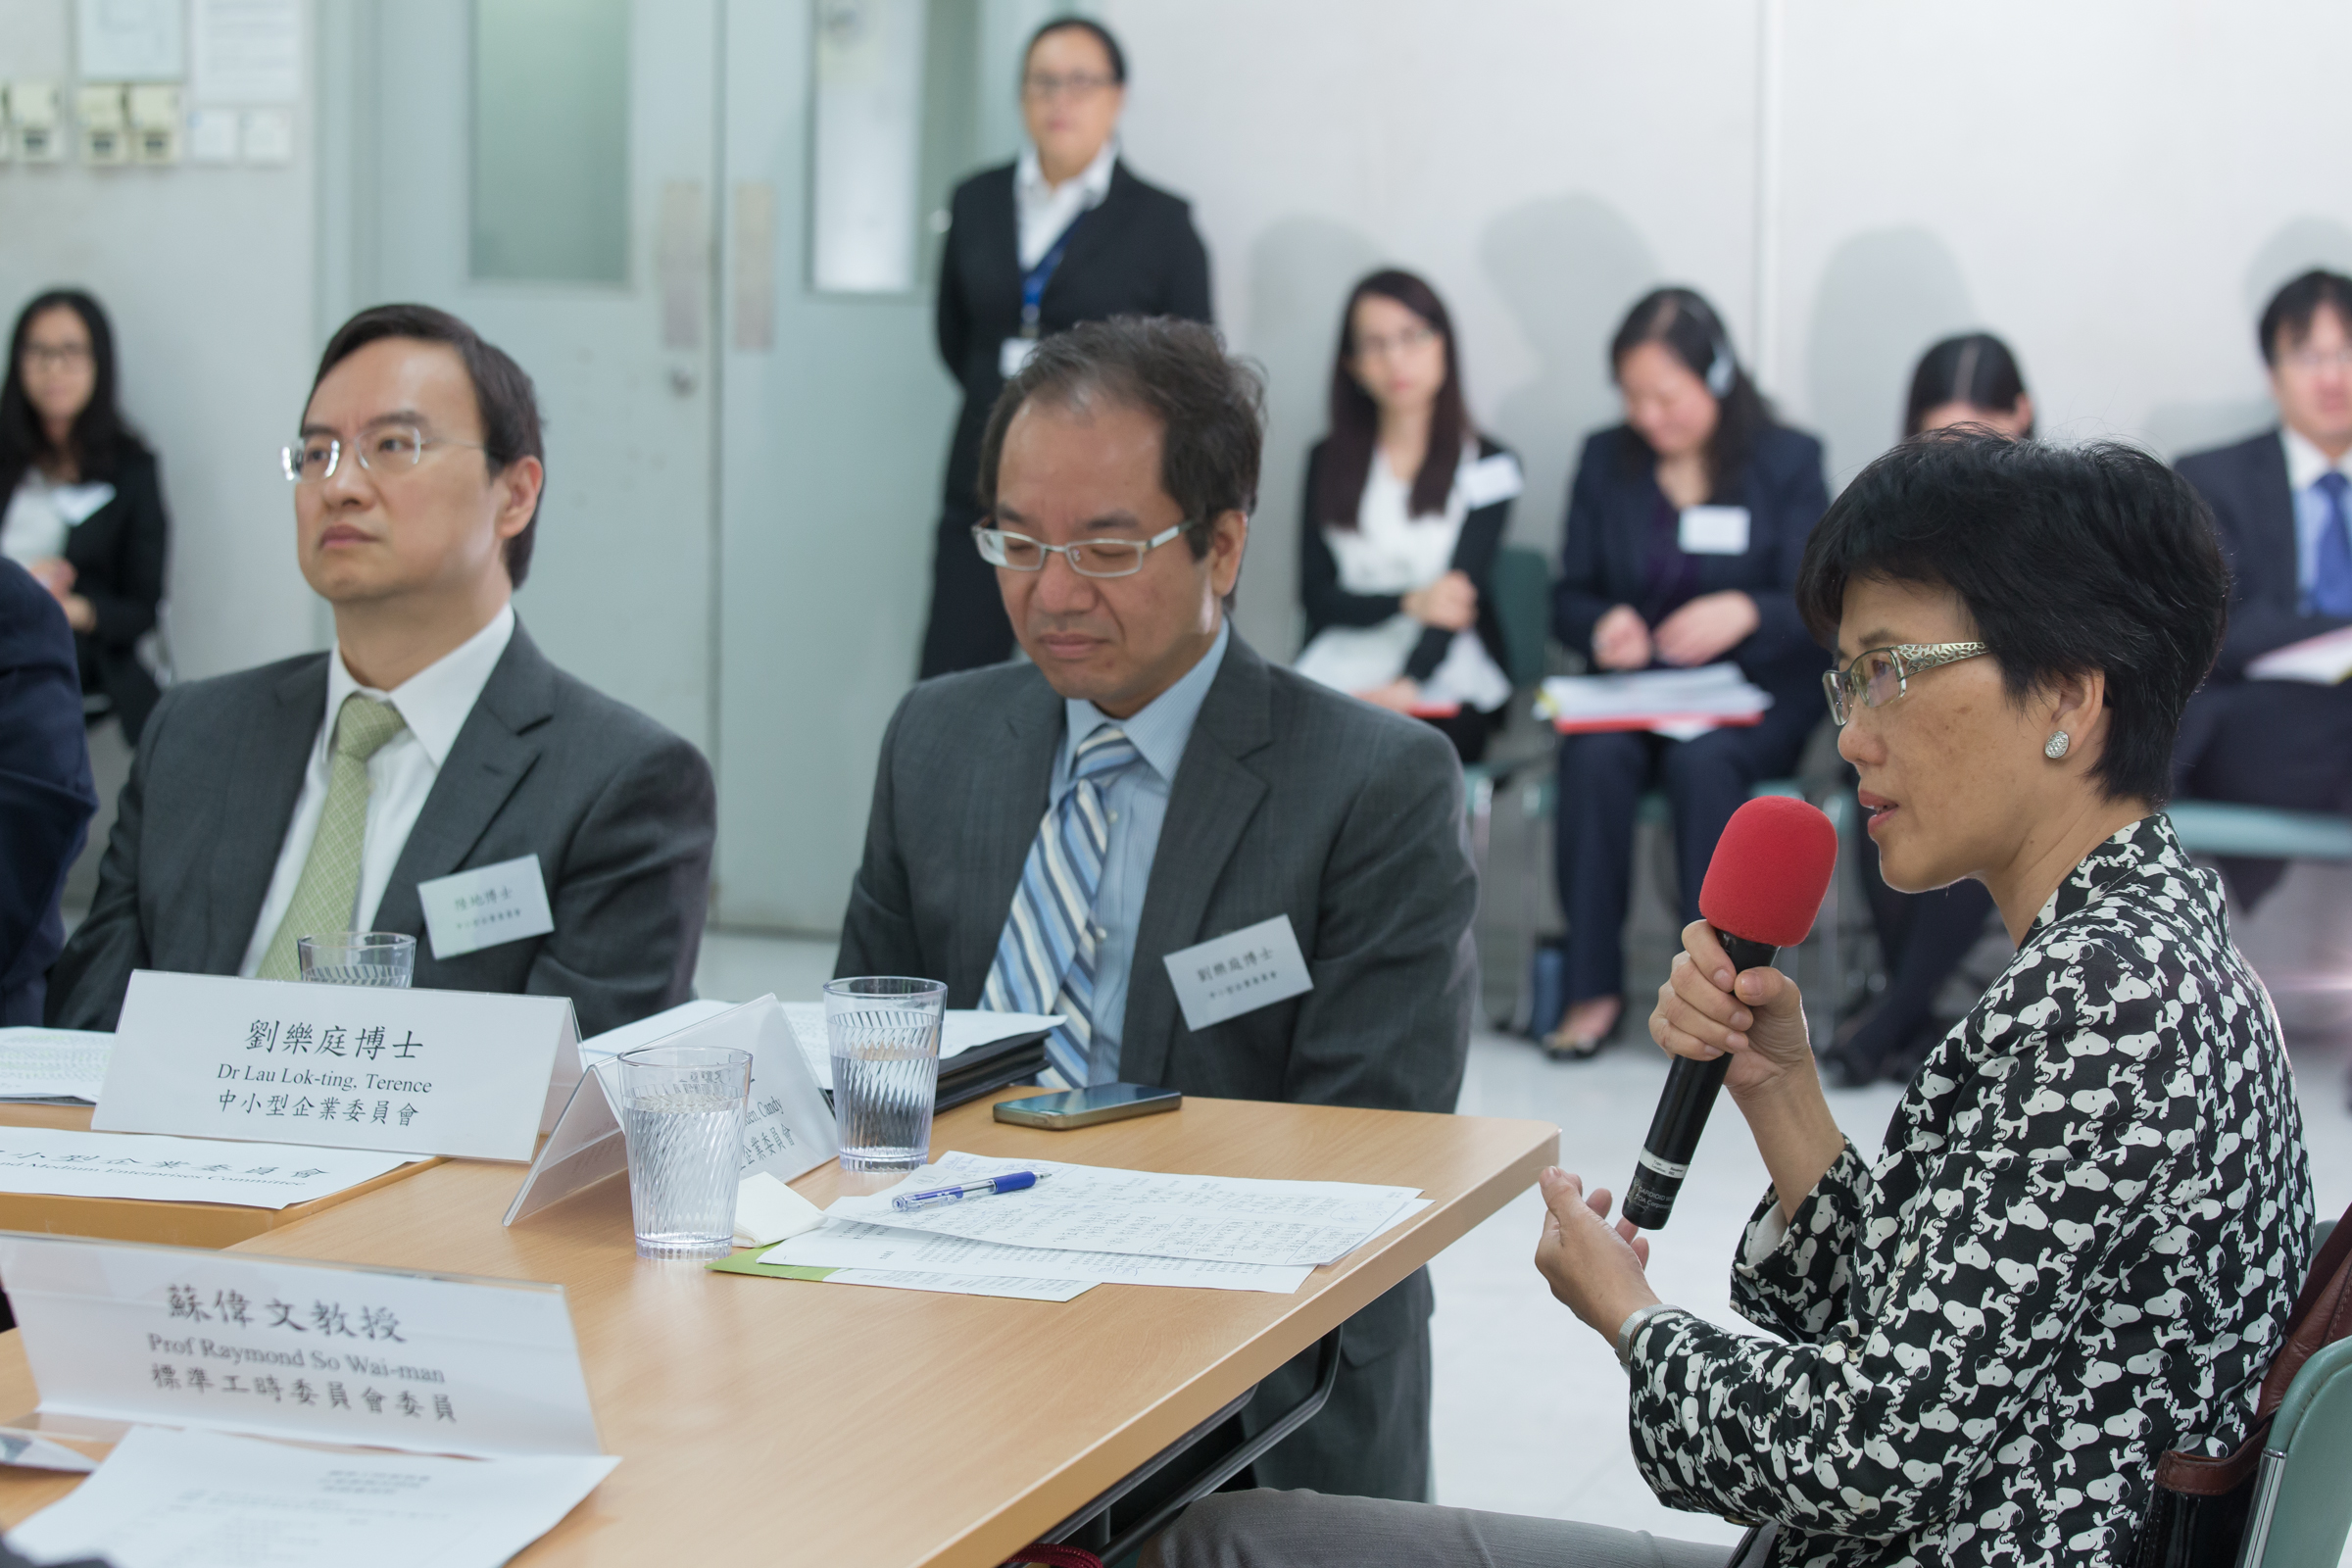 图         片         5 : 中        小        型        企        业        委        员        会        委        员        于        2014 年        5 月        15 日        出        席        谘        询        座        谈        会        ，        向        标        准        工        时        委        员        会        反        映        中        小        企        业        对        订        立        标        准        工        时        的        意        见        。       